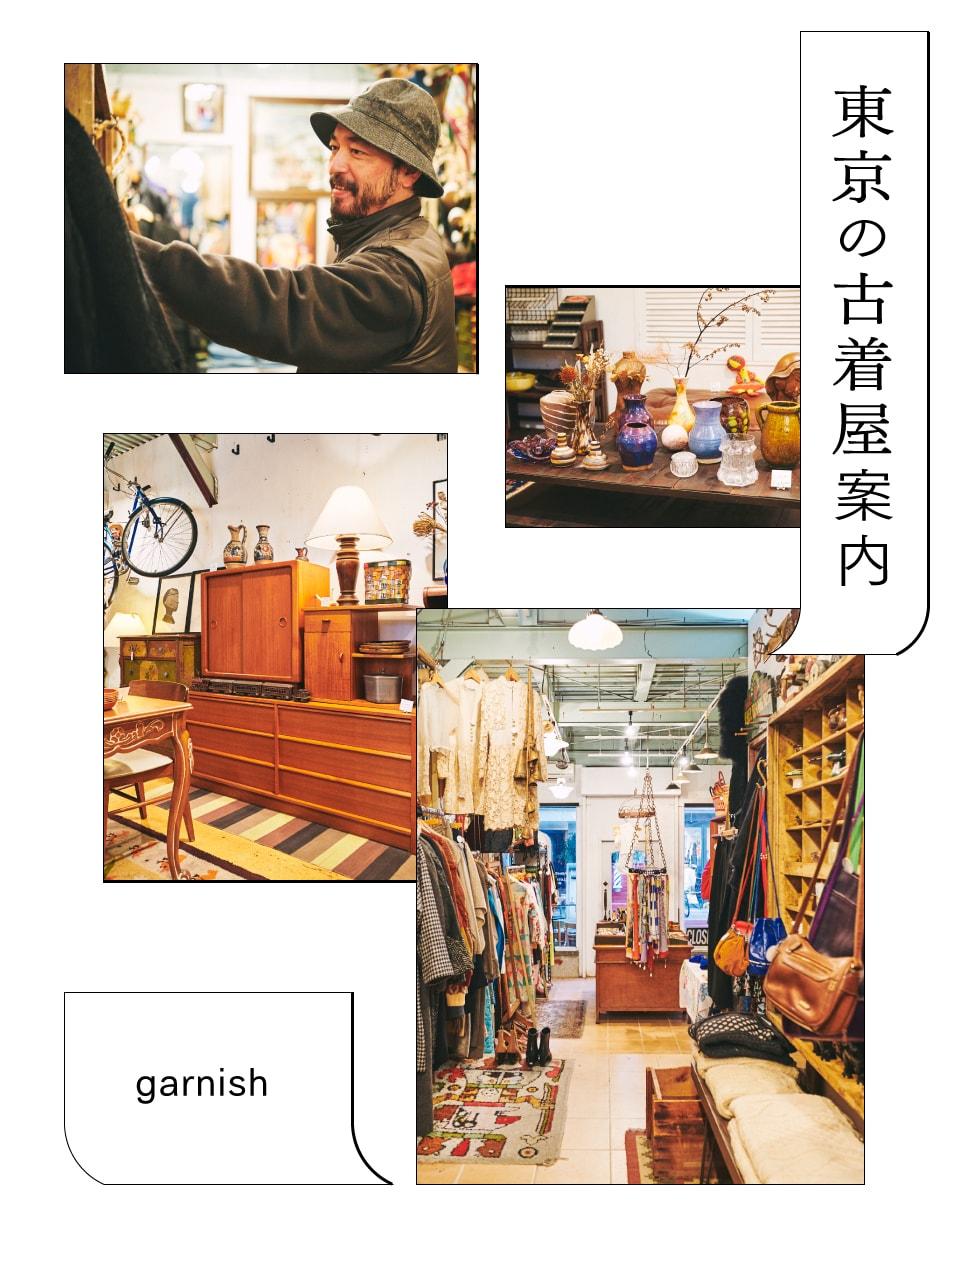 家具や食器など日常を彩るアイテムが並ぶ「ガーニッシュ」。＋αが楽しい、東京の古着屋案内